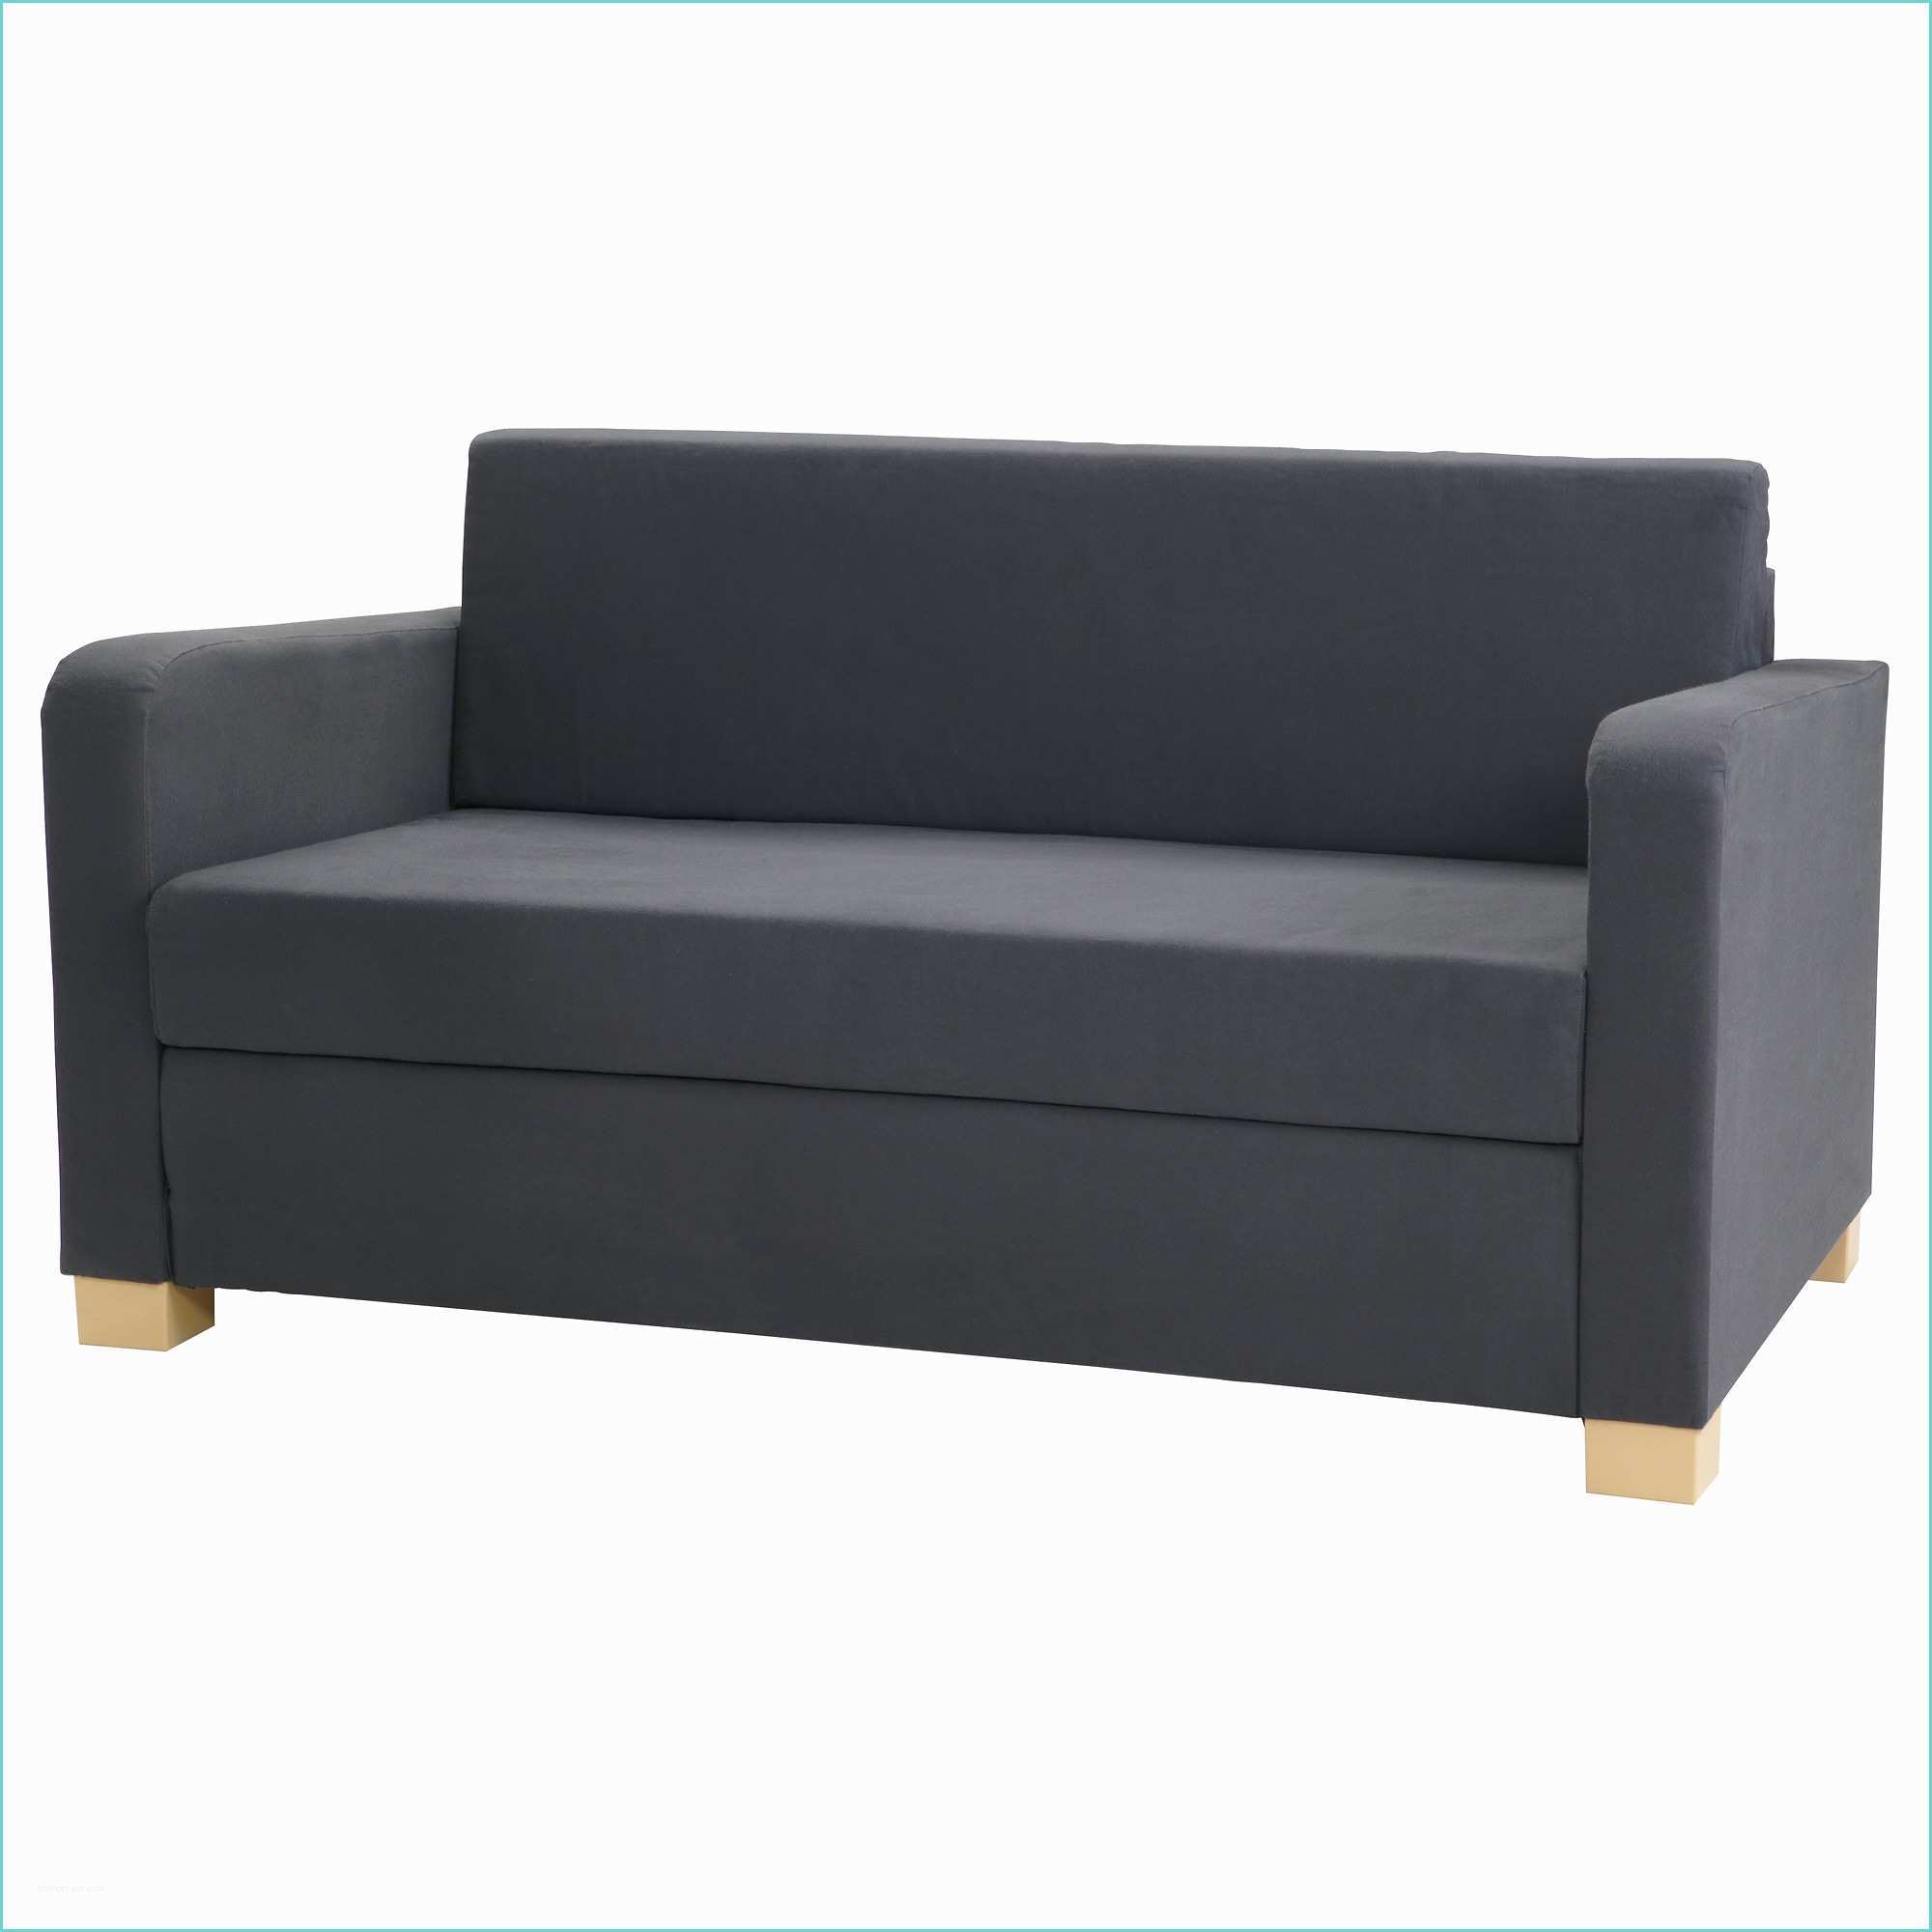 Sofa Beds In Ikea Ikea Futon sofa Bed Sale Bm Furnititure